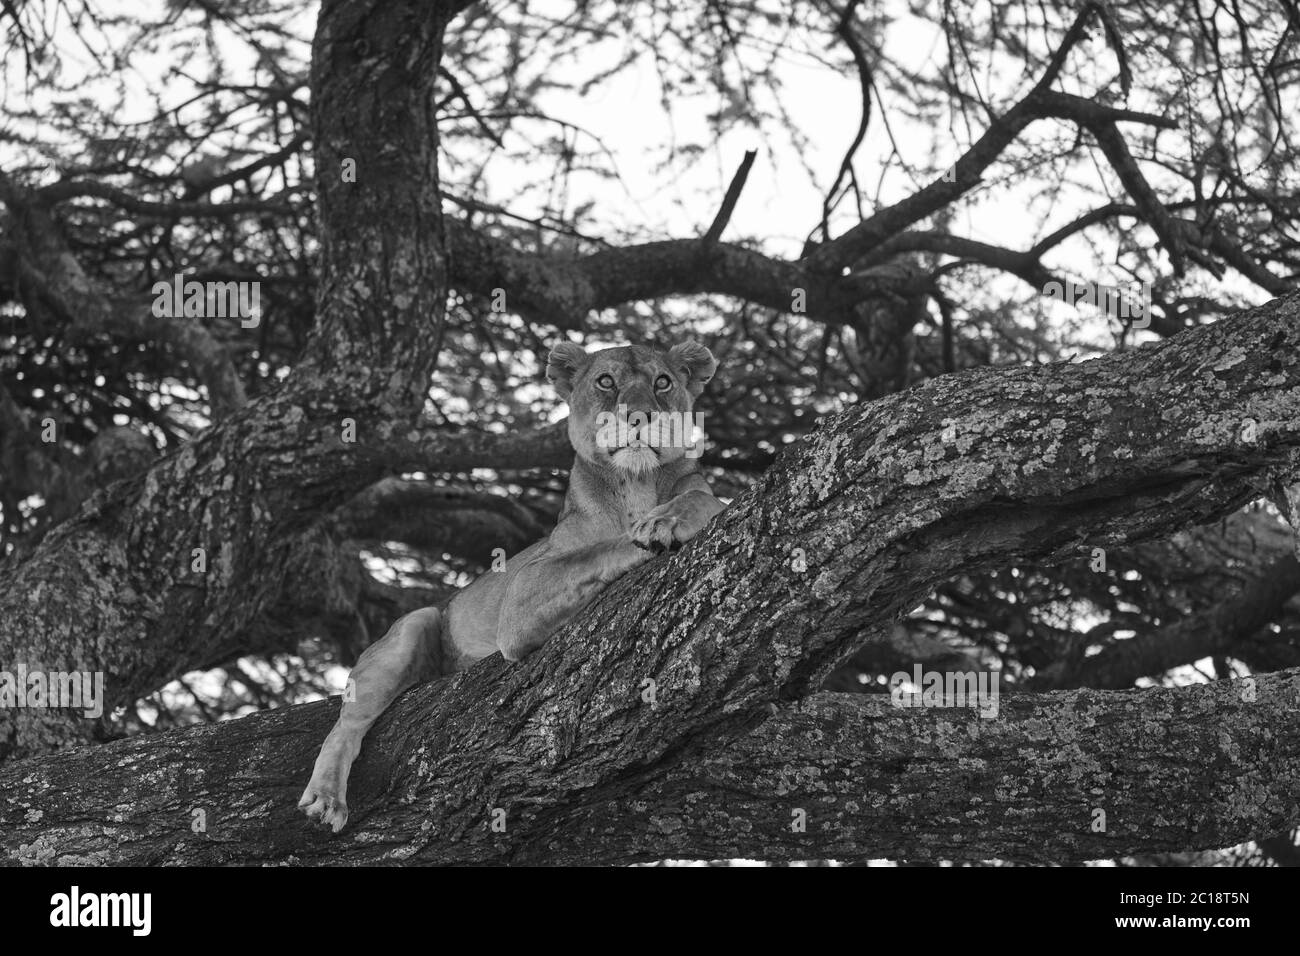 Löwin Baum Klettern Serengeti - Löwe schwarz und weiß bnw Stockfoto